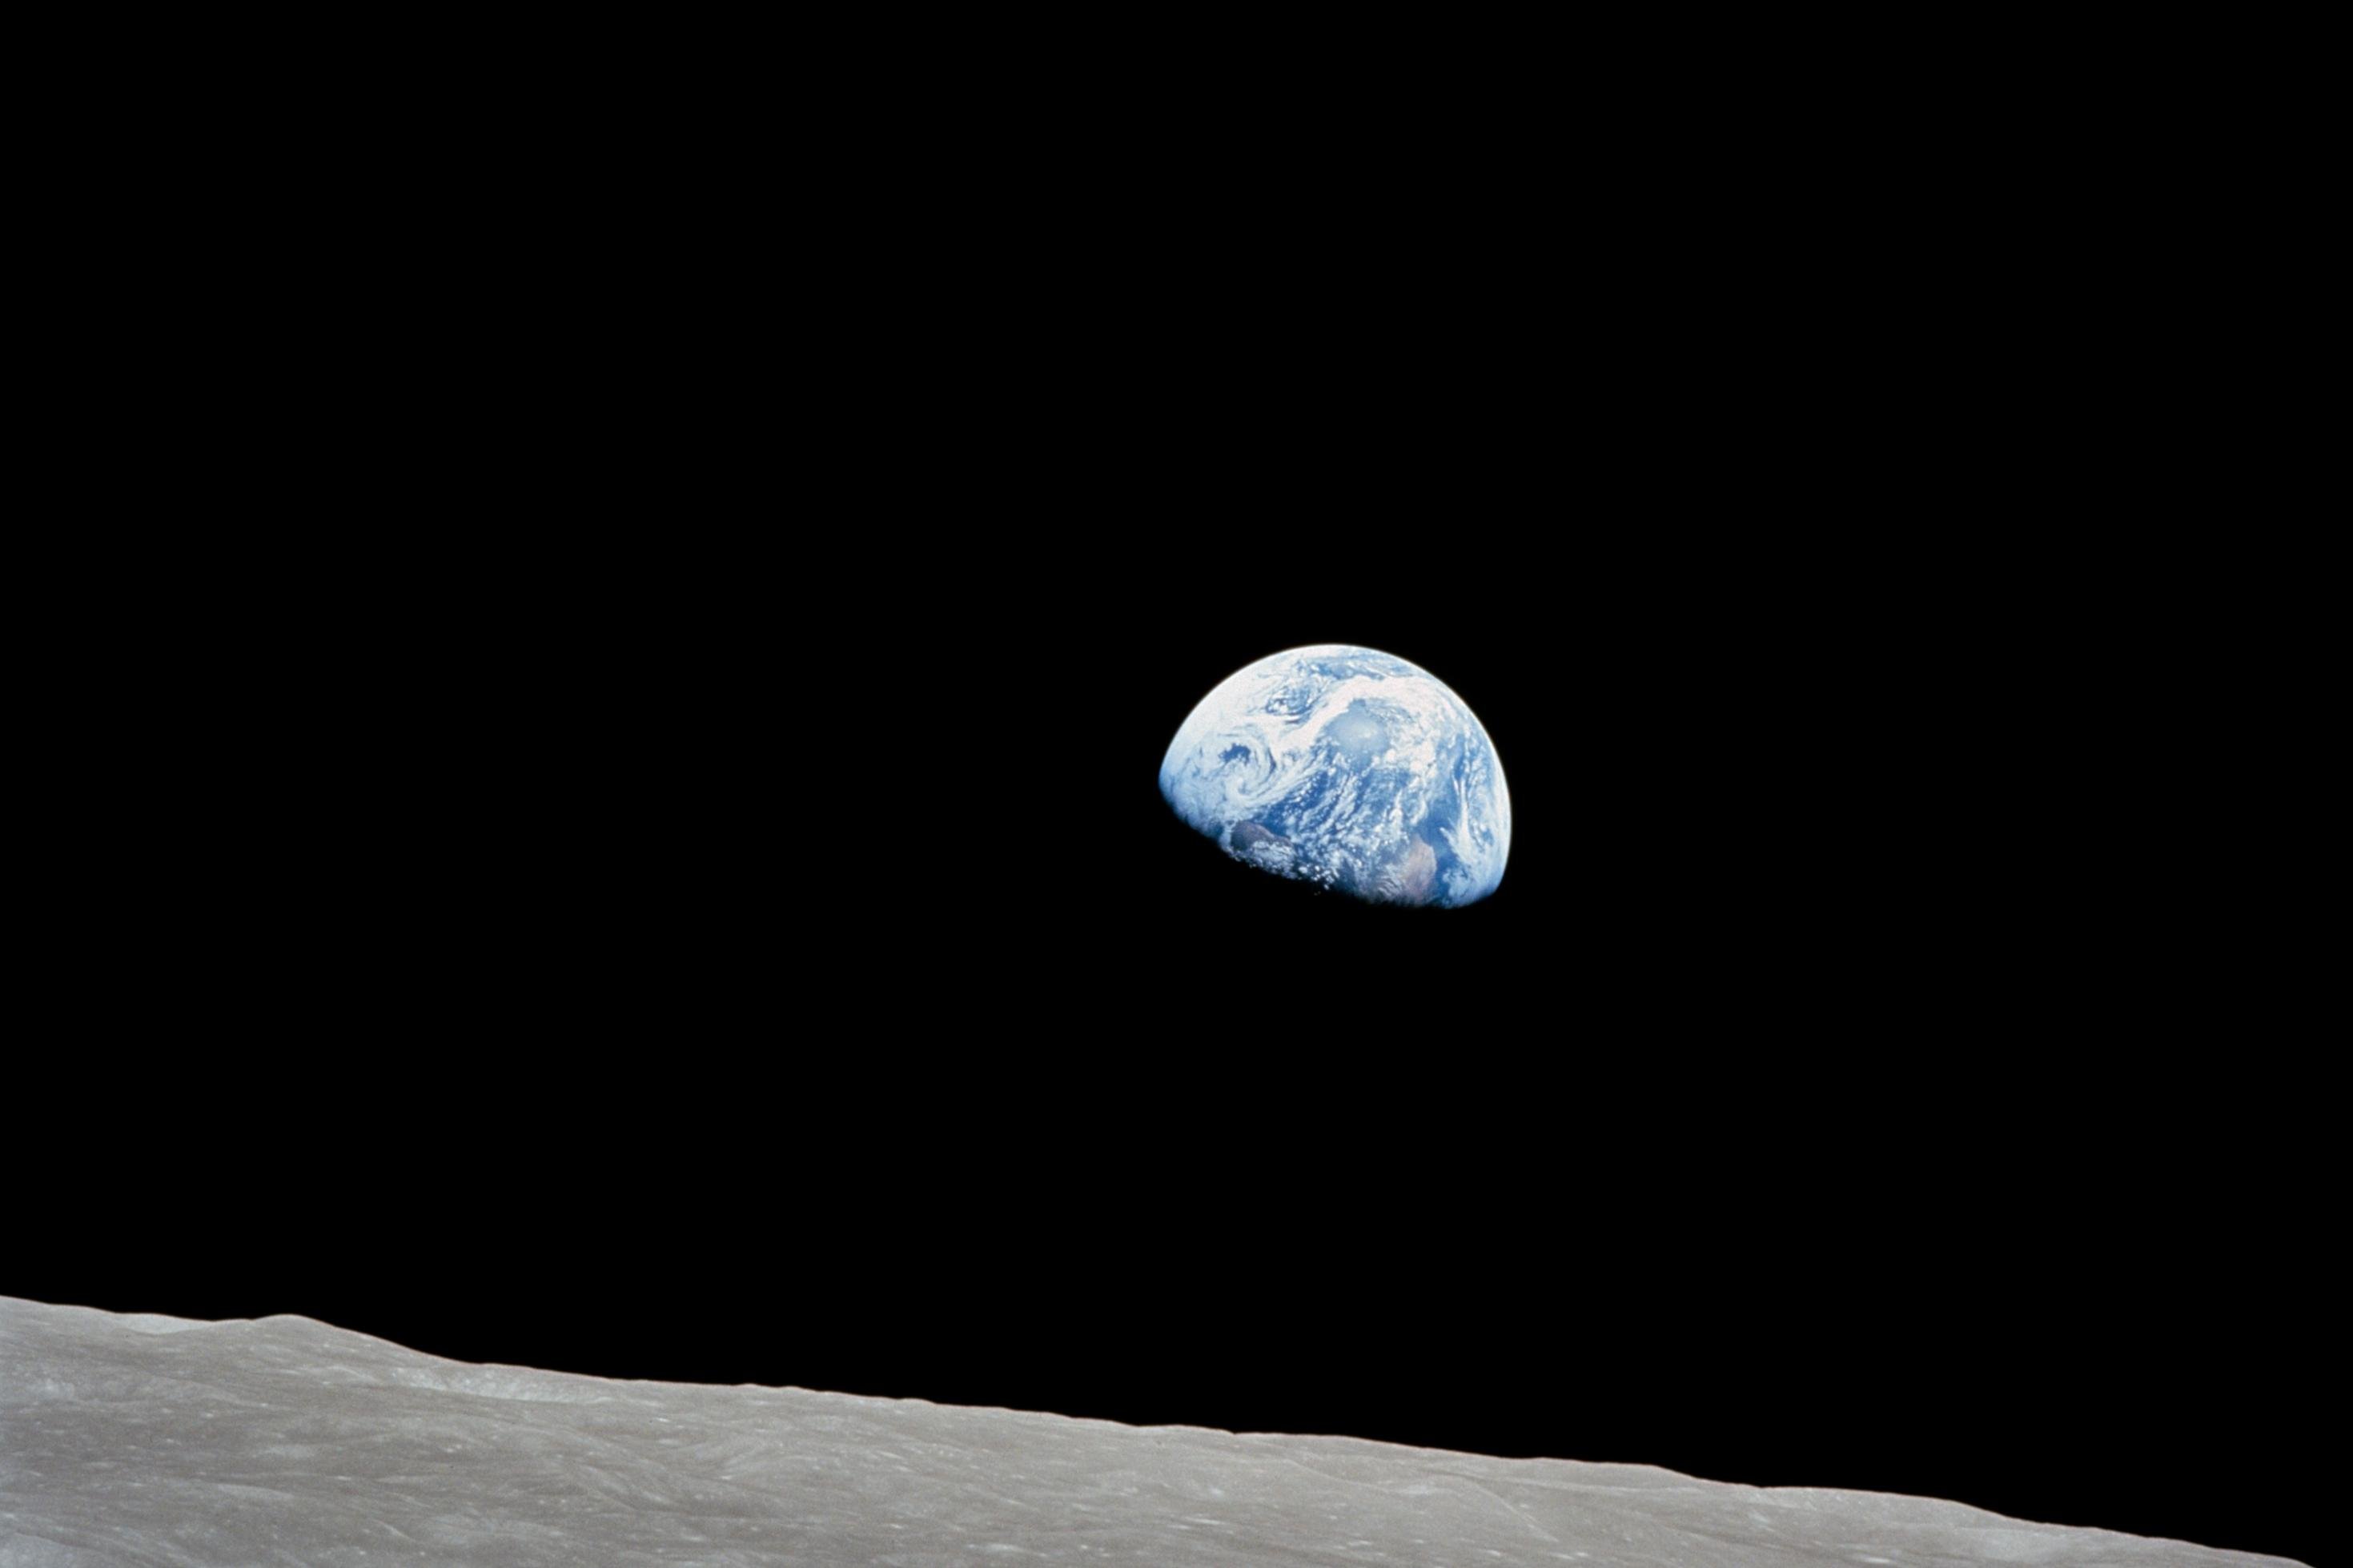 Die Erde gesehen vom Mond, fotografiert von den Apollo-8 Astronauten.